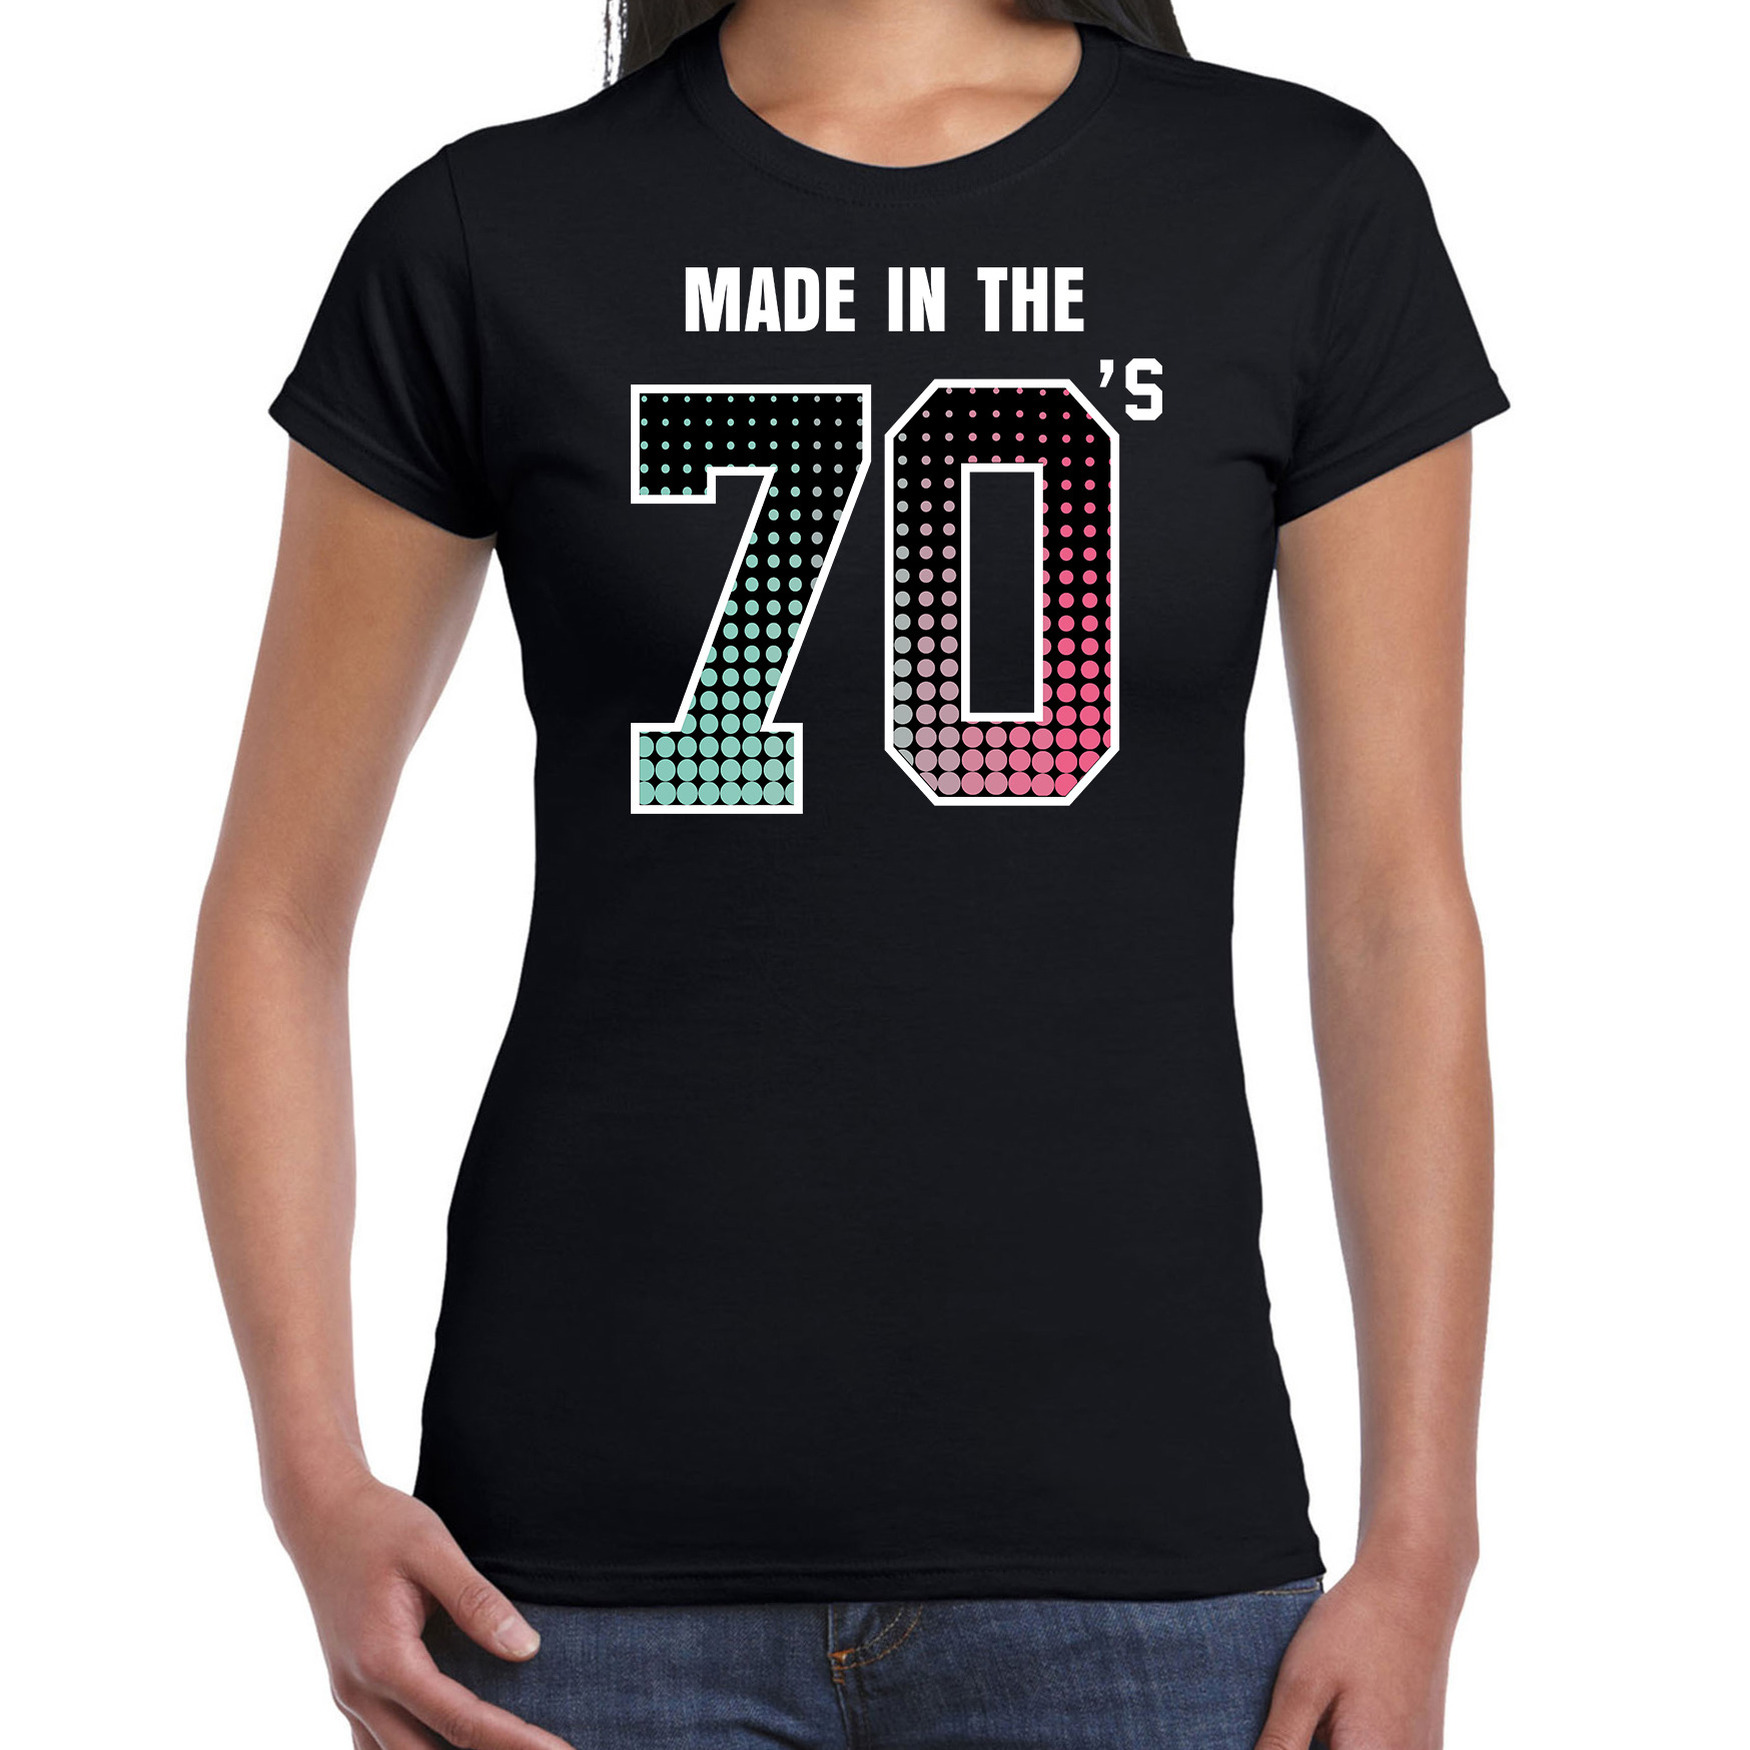 Seventies t-shirt - shirt made in the 70s - geboren in de jaren 70 zwart voor dames